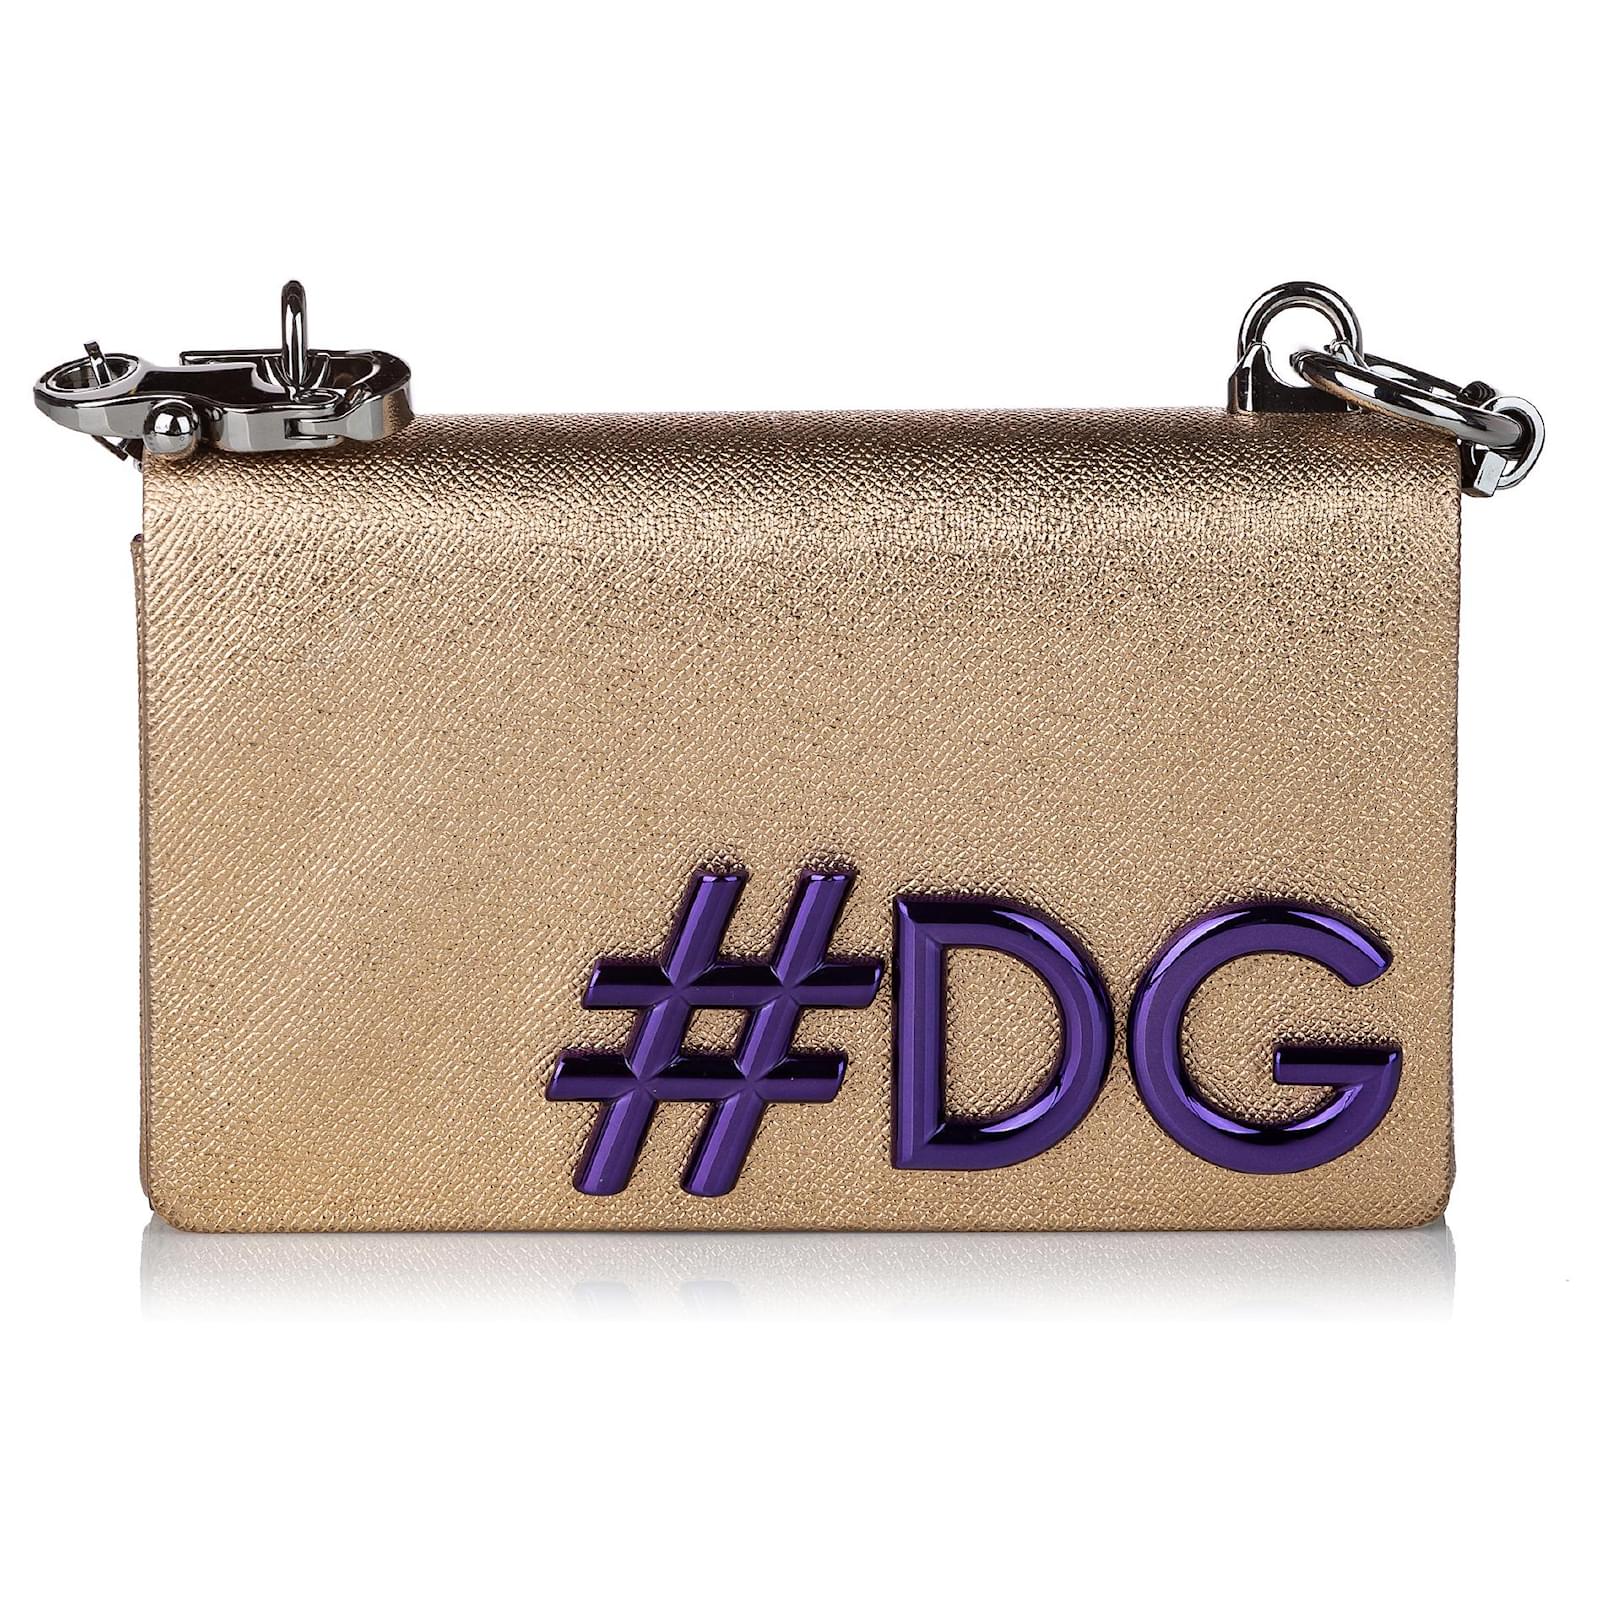 Dolce&Gabbana Gold leather handbag